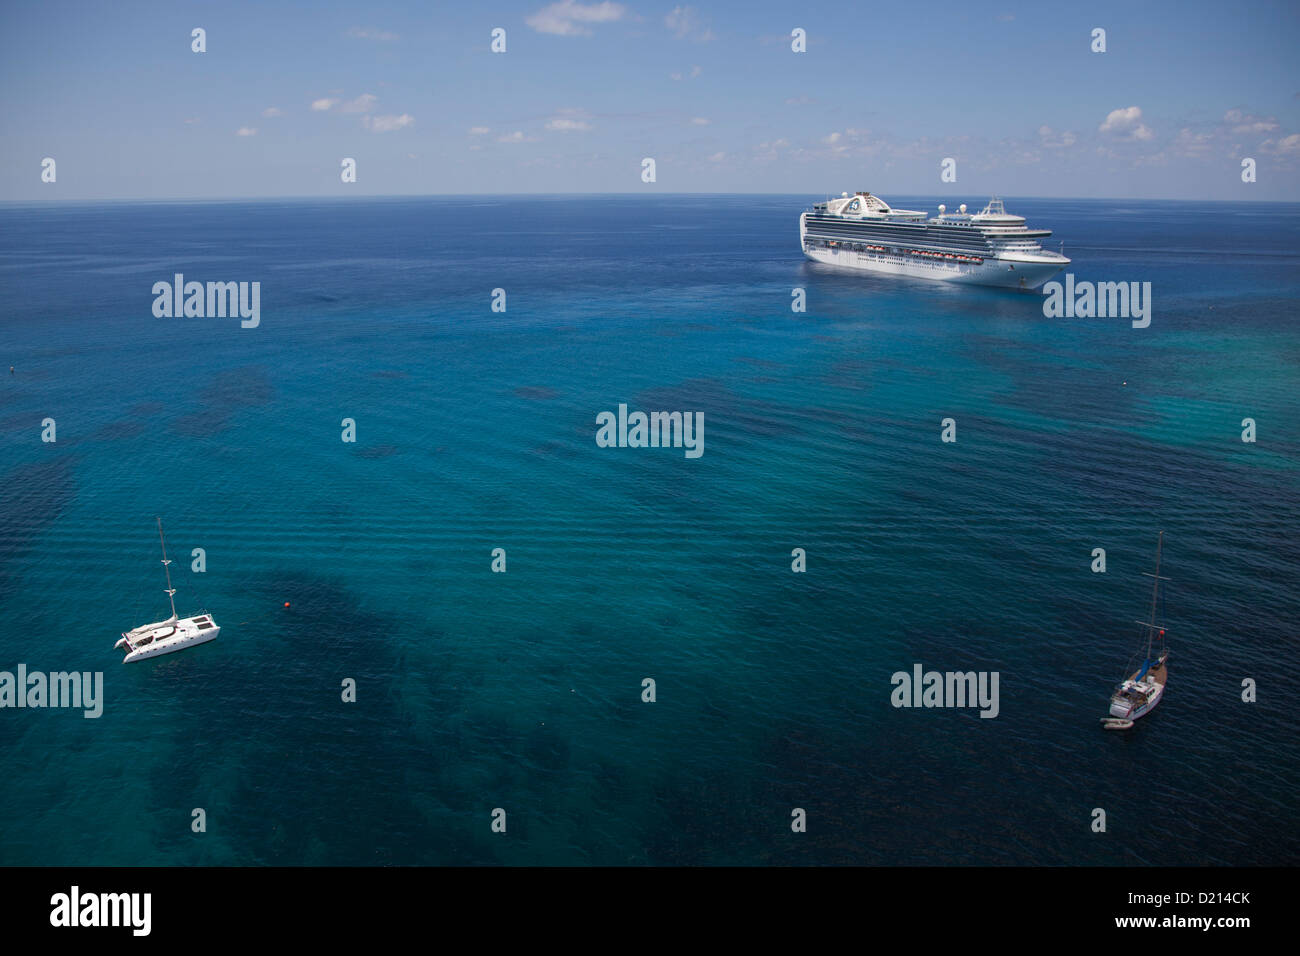 Vue aérienne de voiliers et de bateau de croisière Crown Princess (Princess Cruises), George Town, Grand Cayman, Cayman Islands, Caribbean Banque D'Images